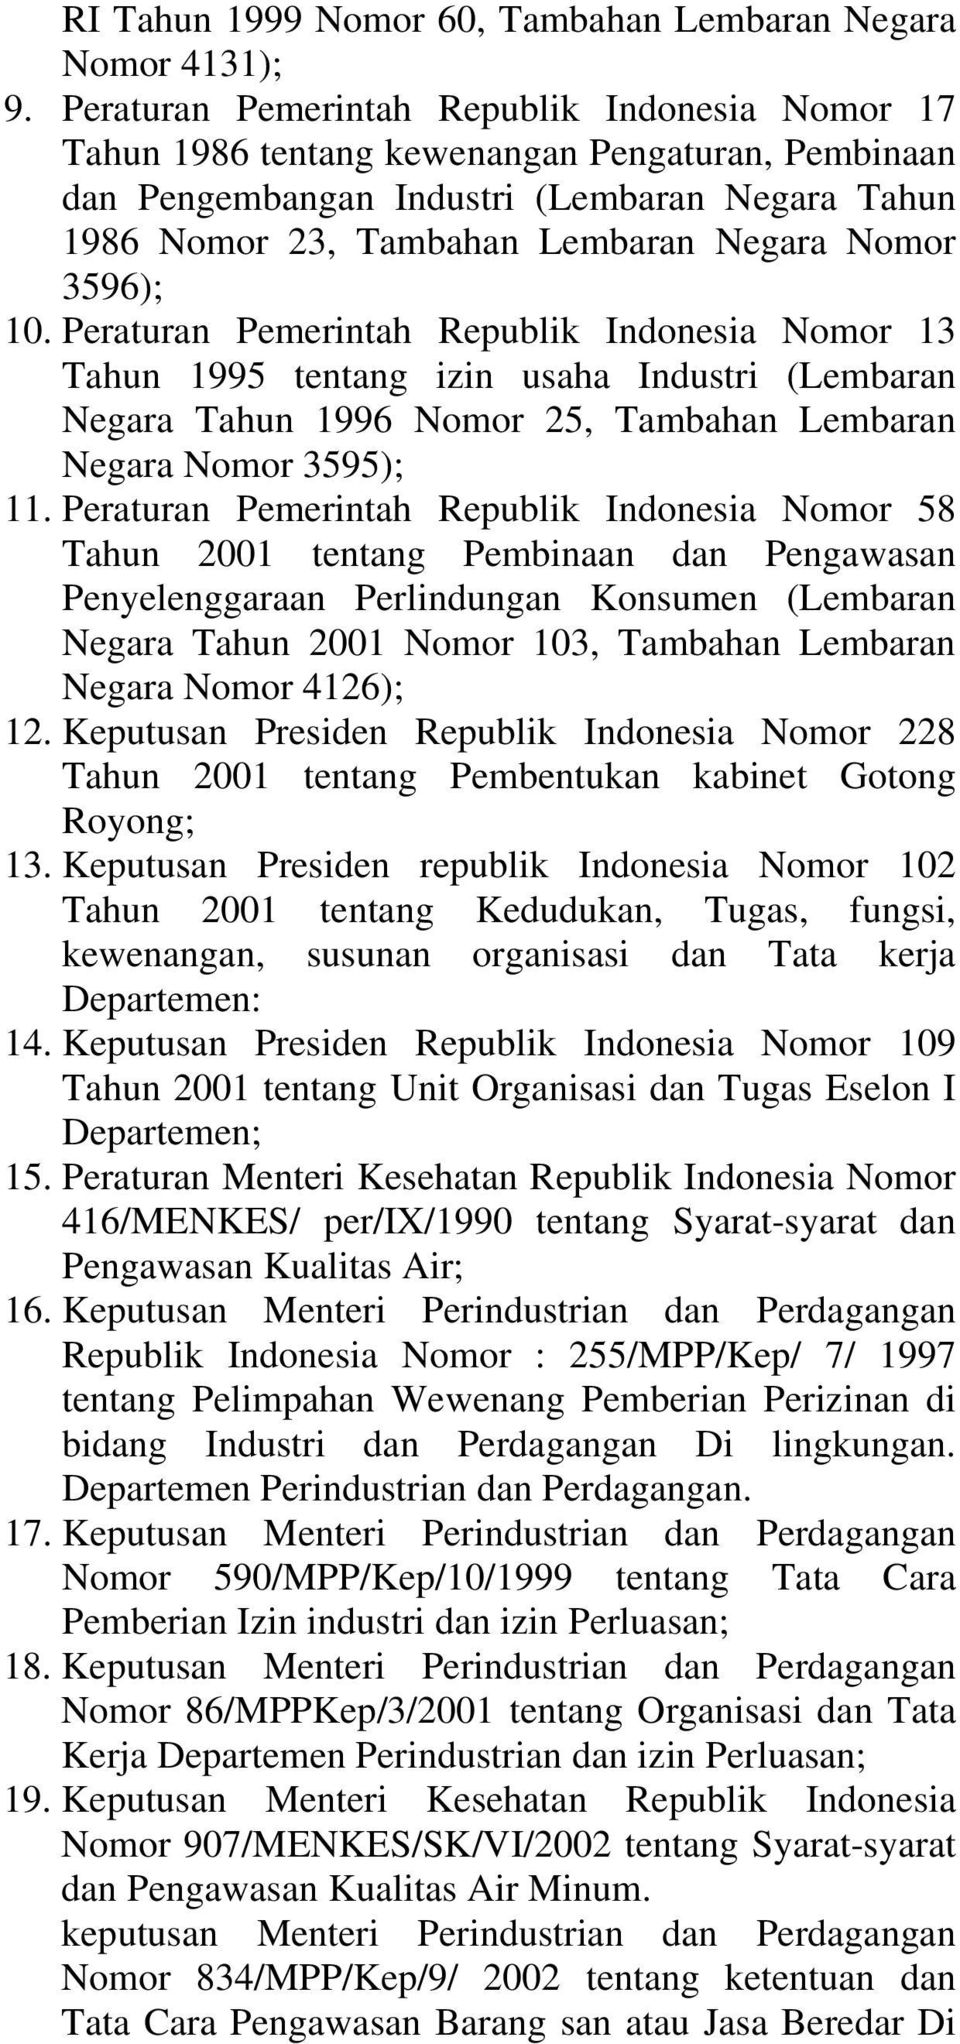 3596); 10. Peraturan Pemerintah Republik Indonesia Nomor 13 Tahun 1995 tentang izin usaha Industri (Lembaran Negara Tahun 1996 Nomor 25, Tambahan Lembaran Negara Nomor 3595); 11.